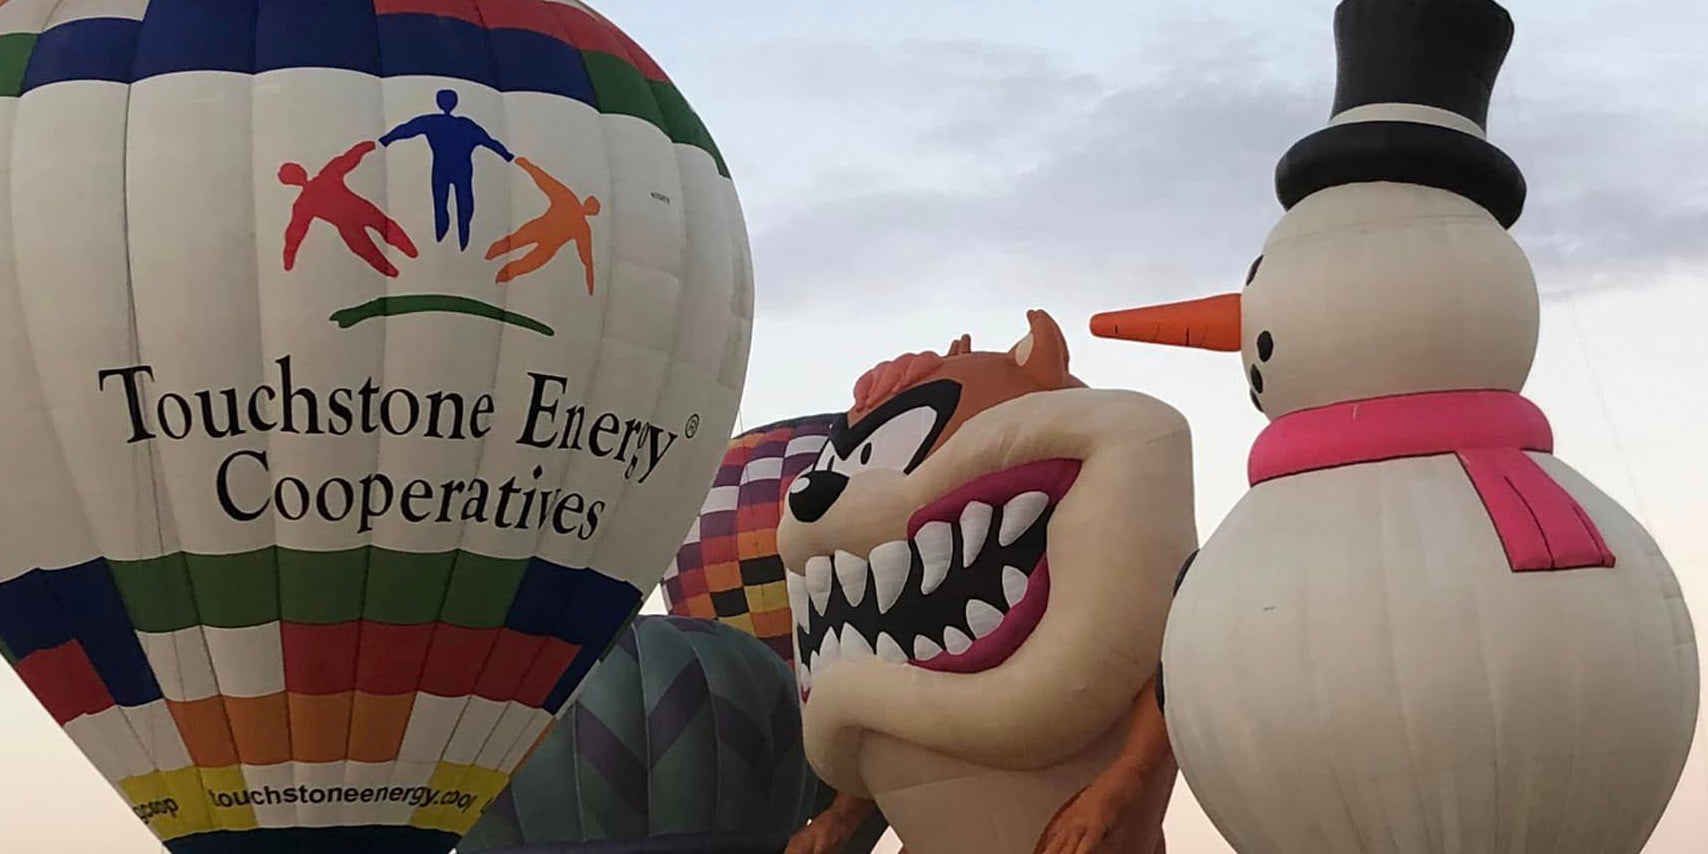 Hot Air Balloon Characters